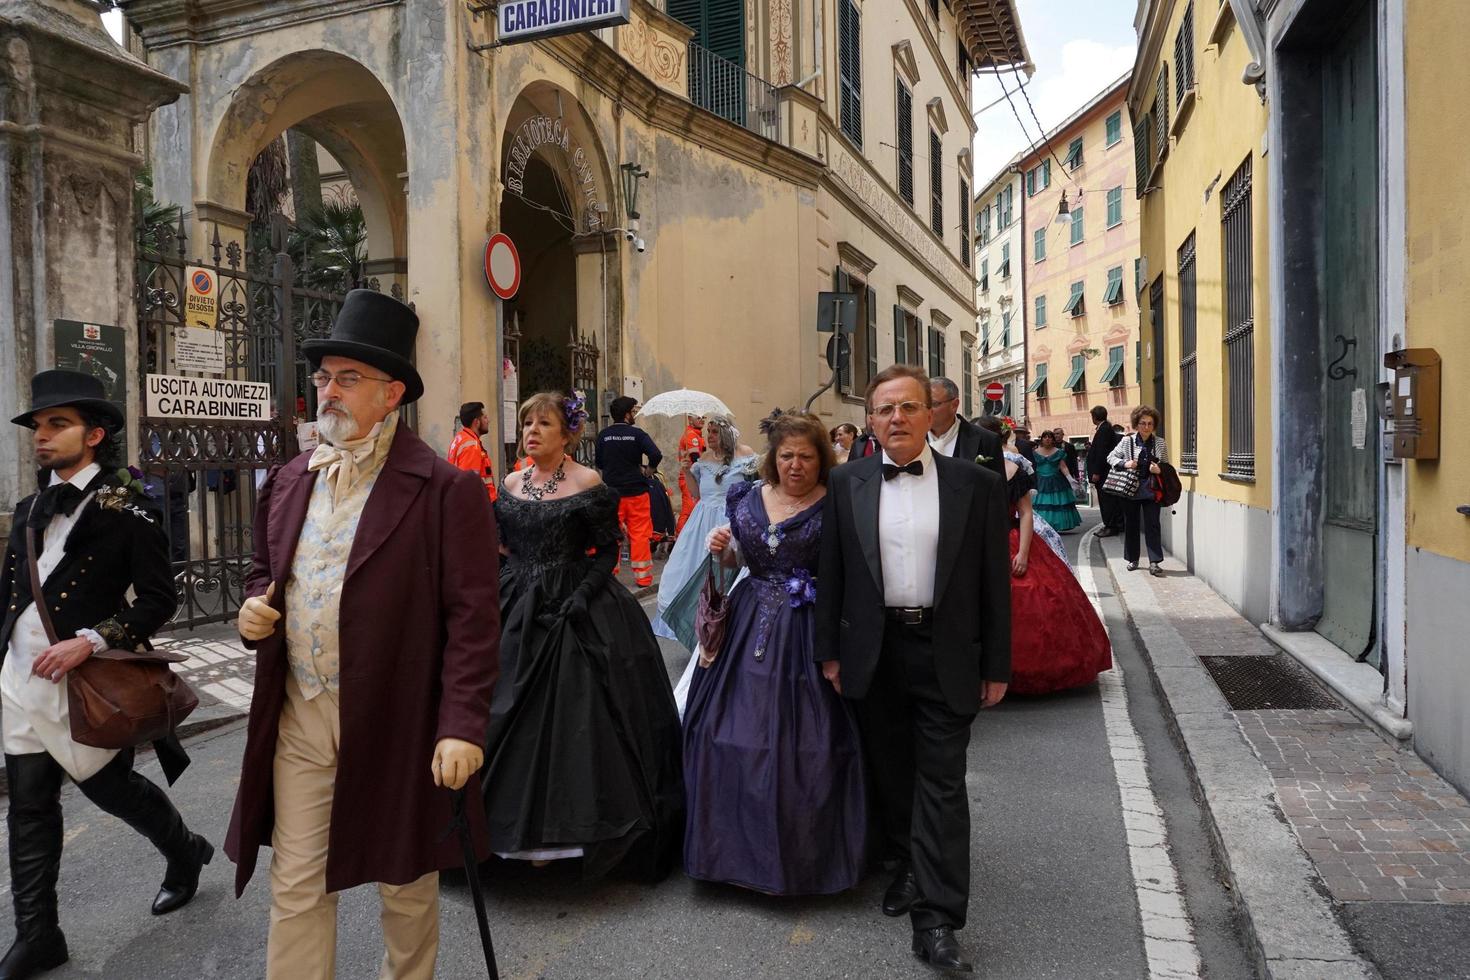 genua, italien - 5. mai 2018 - kleiderparade des 19. jahrhunderts für die euroflora-ausstellung im einzigartigen szenario der nervi foto